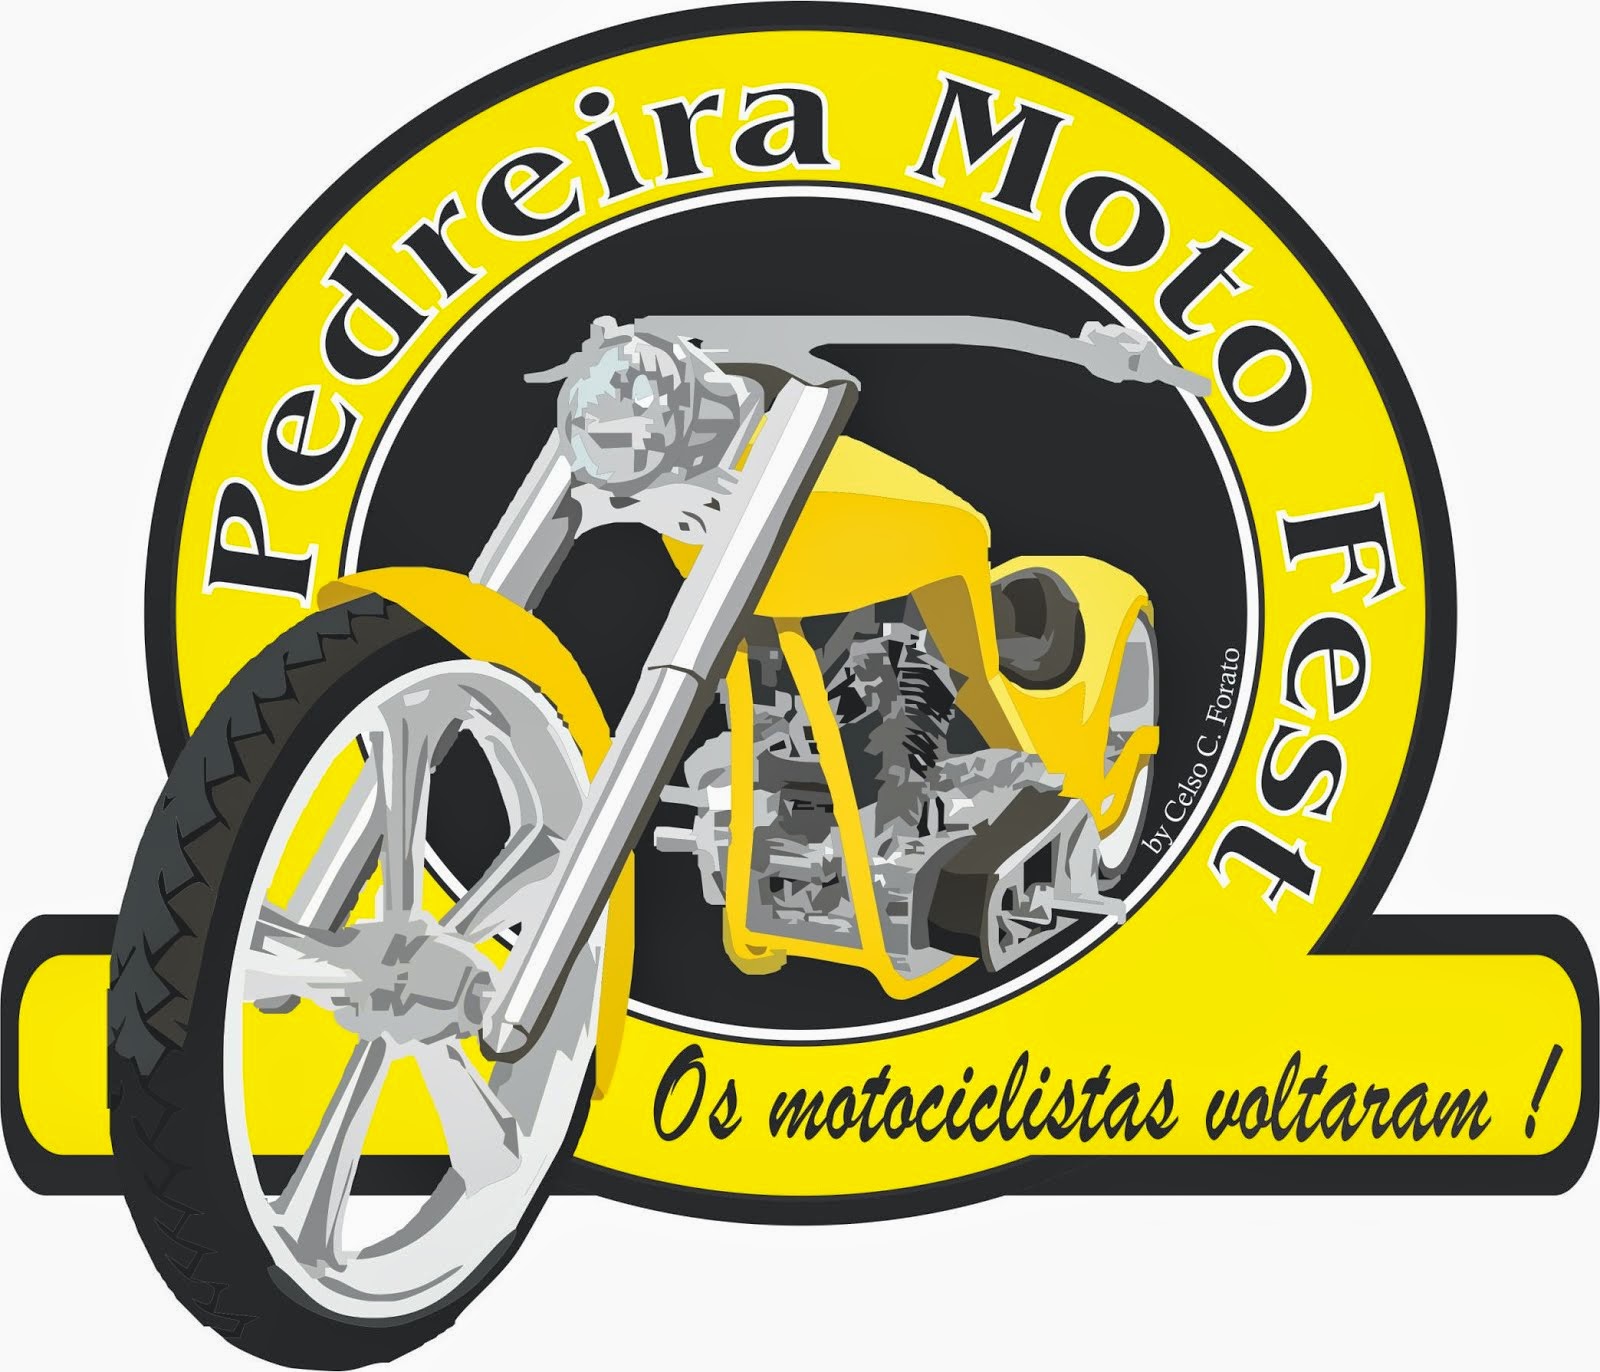 Pedreira Moto Fest